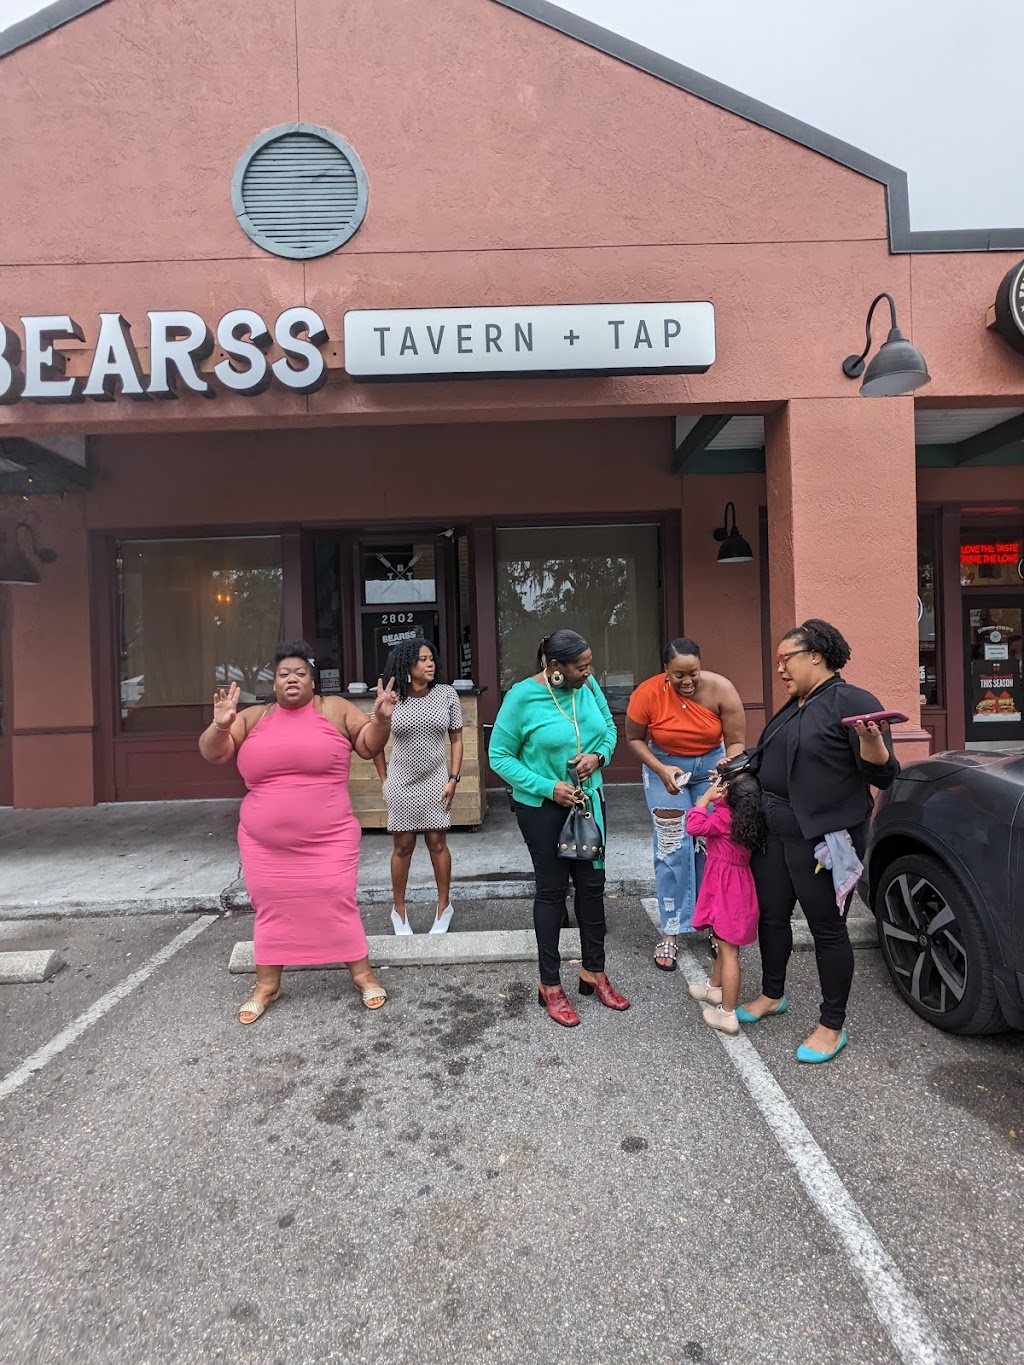 Bearss Tavern and Tap | 2802 E Bearss Ave, Tampa, FL 33613, USA | Phone: (813) 466-5249